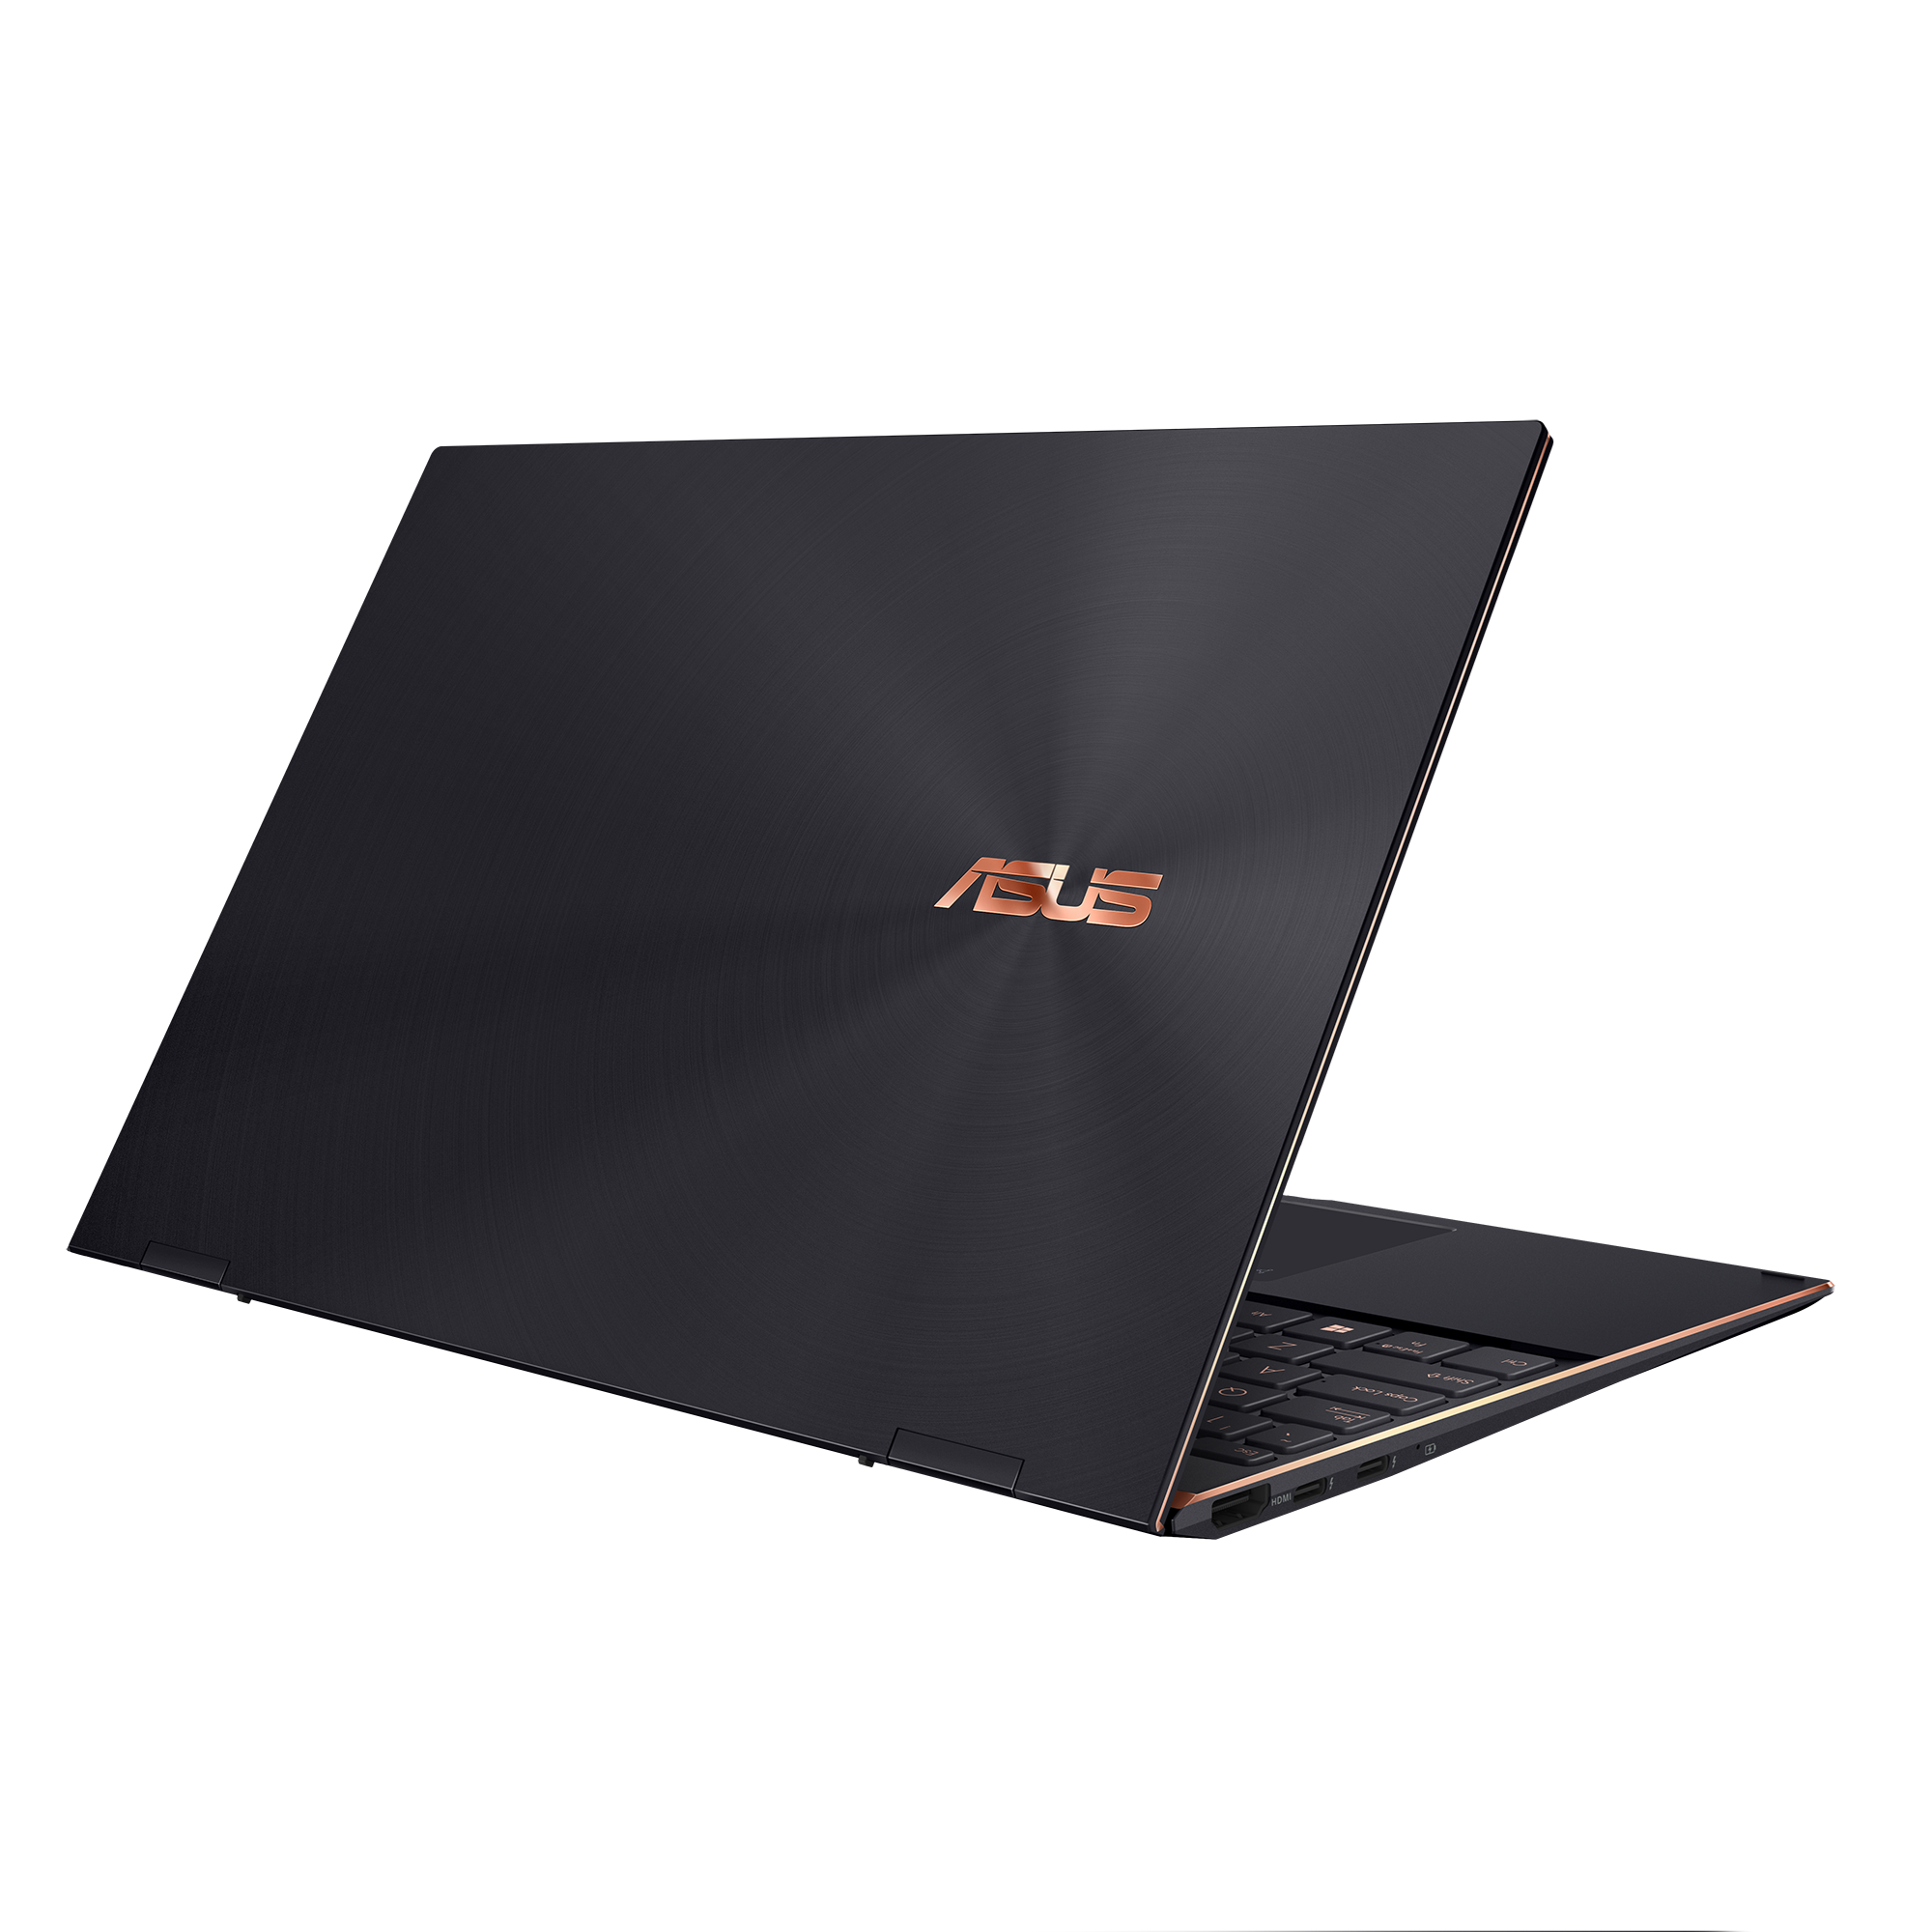 ASUS ZenBook Flip S UX371E